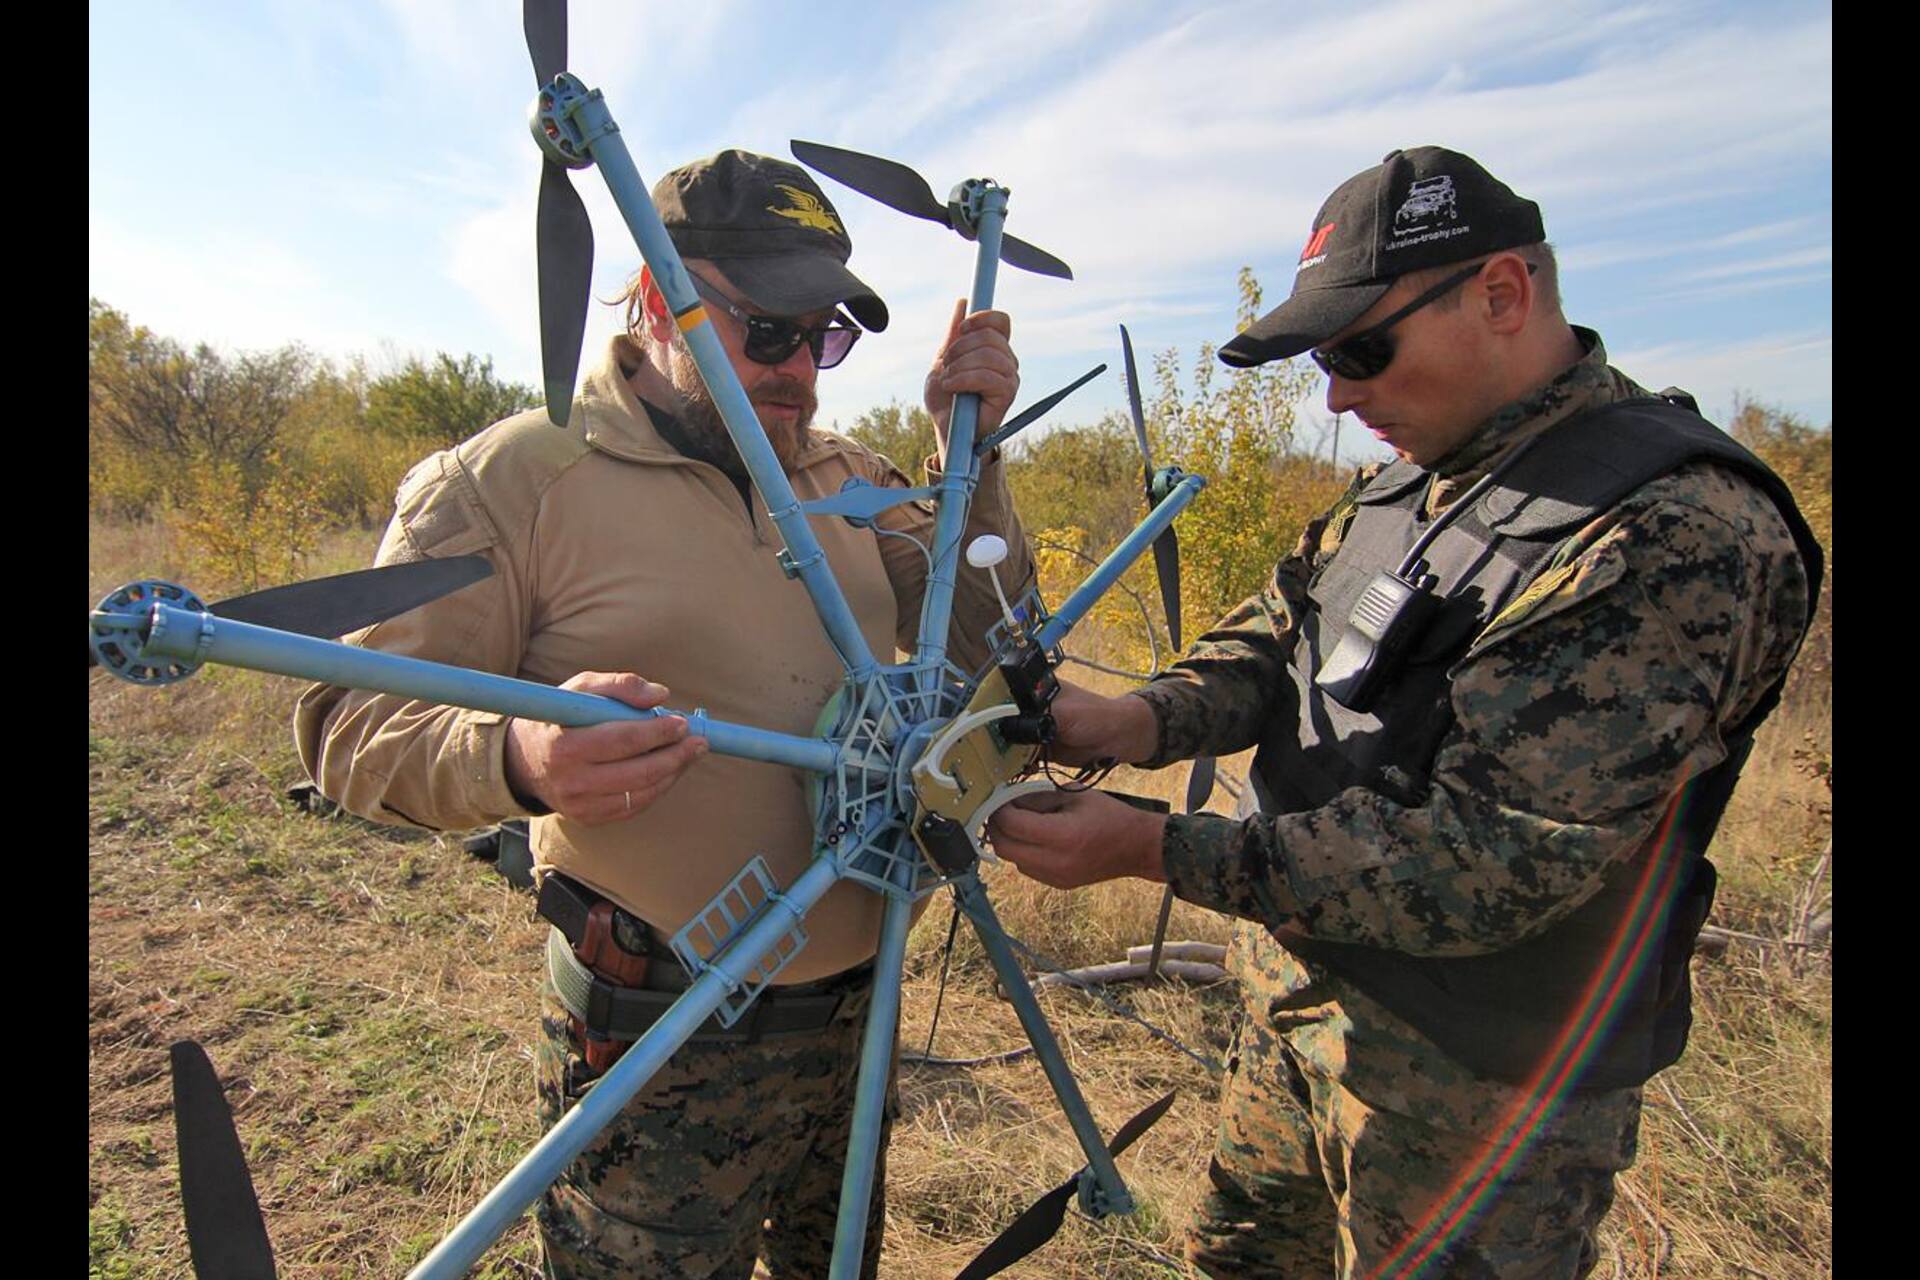 Krievijas un Ukrainas karš: pirmie Ukrainas drona testi 2015. gadā